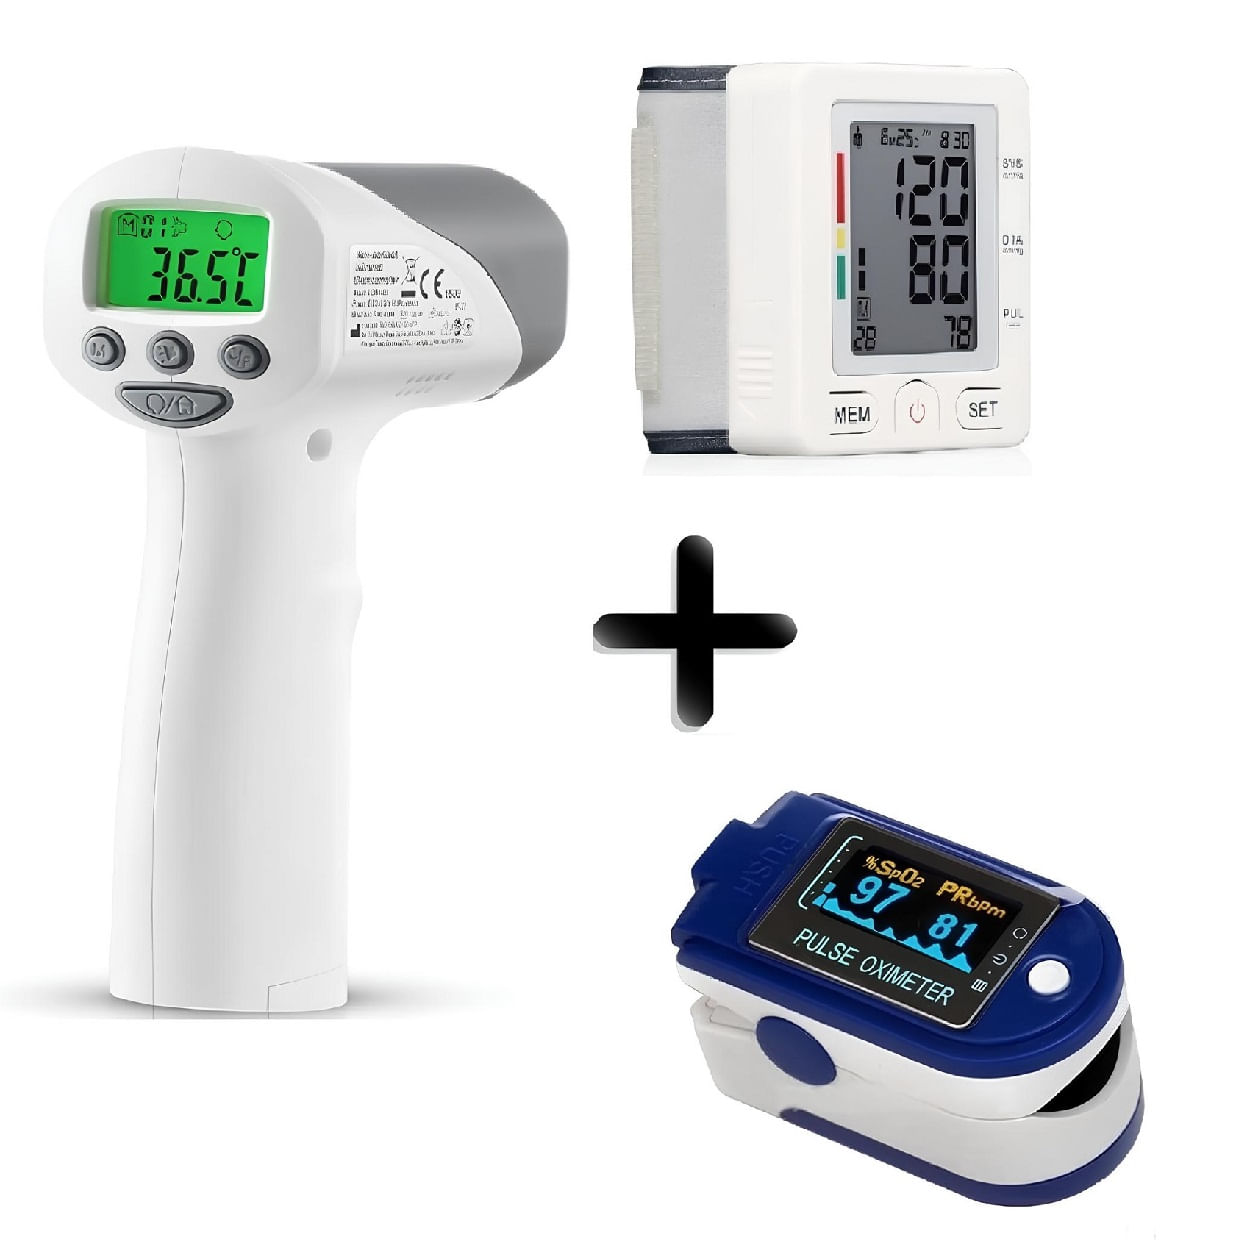 Combo protección : Termometro + Oximetro + Tensiometro